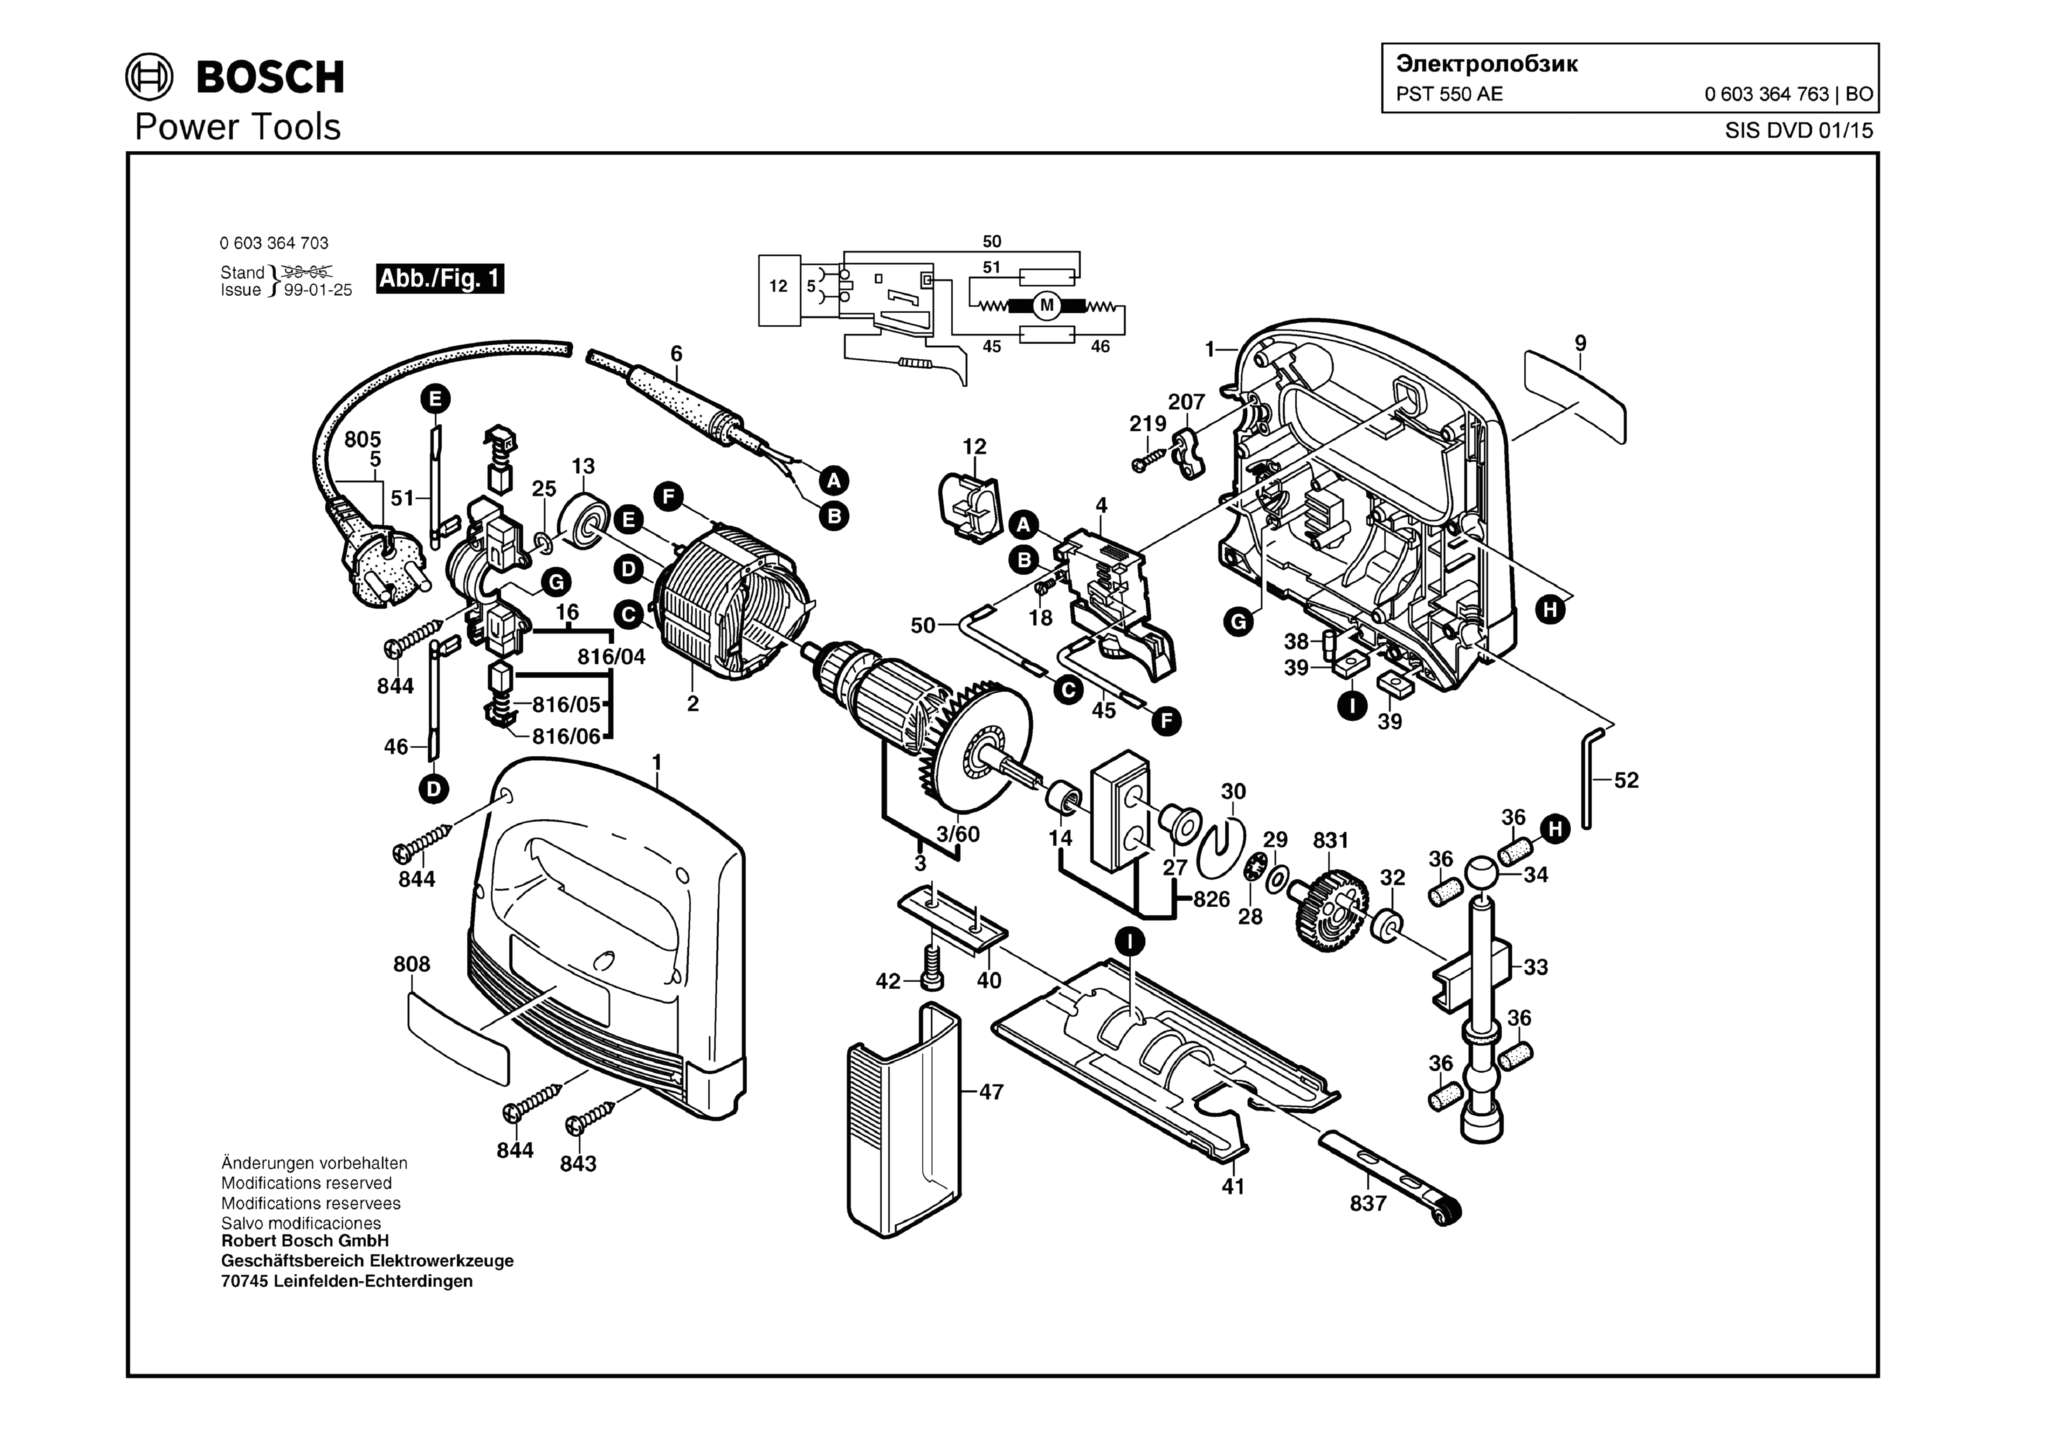 Запчасти, схема и деталировка Bosch PST 550 AE (ТИП 0603364763)